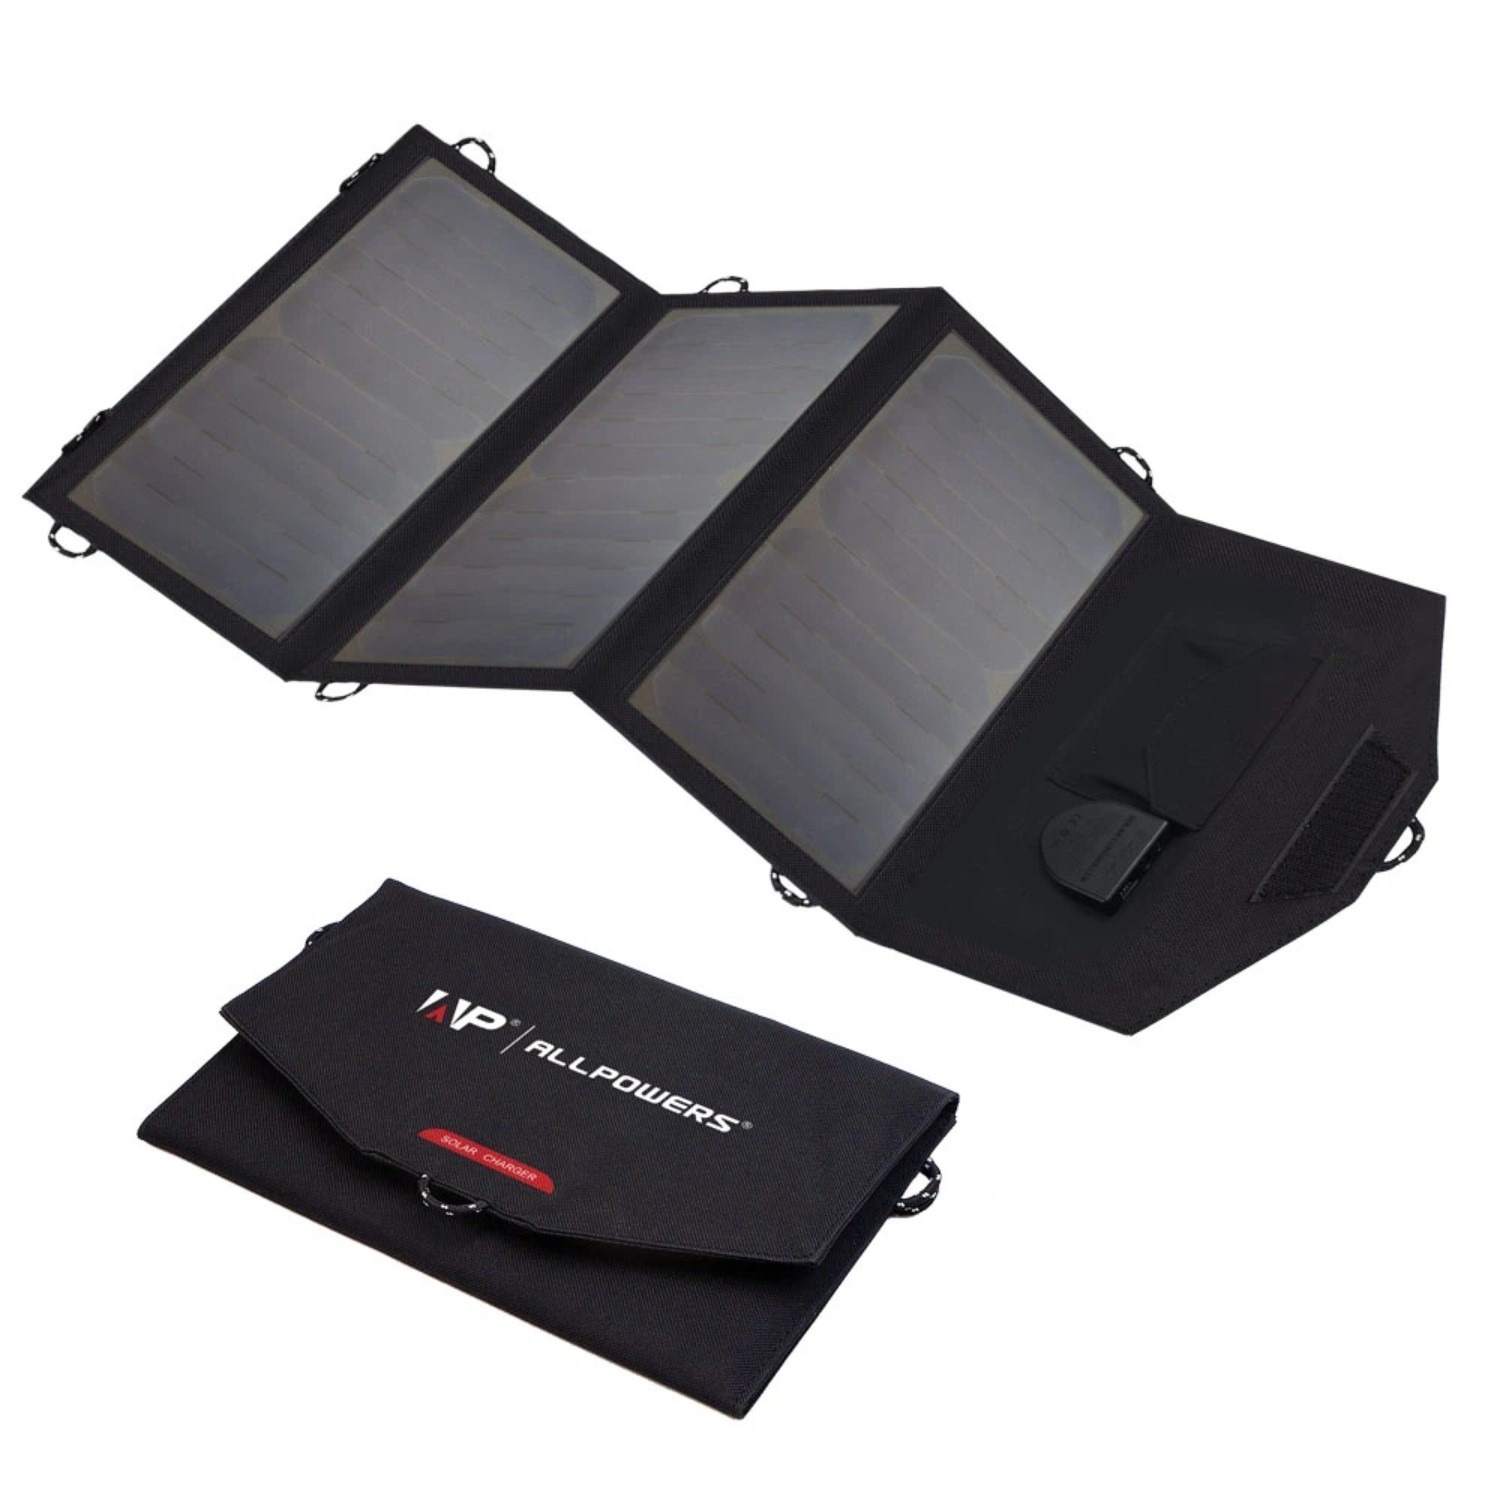 Panel solar portatil 21W Cargador solar plegable de 2 puertos USB 18V